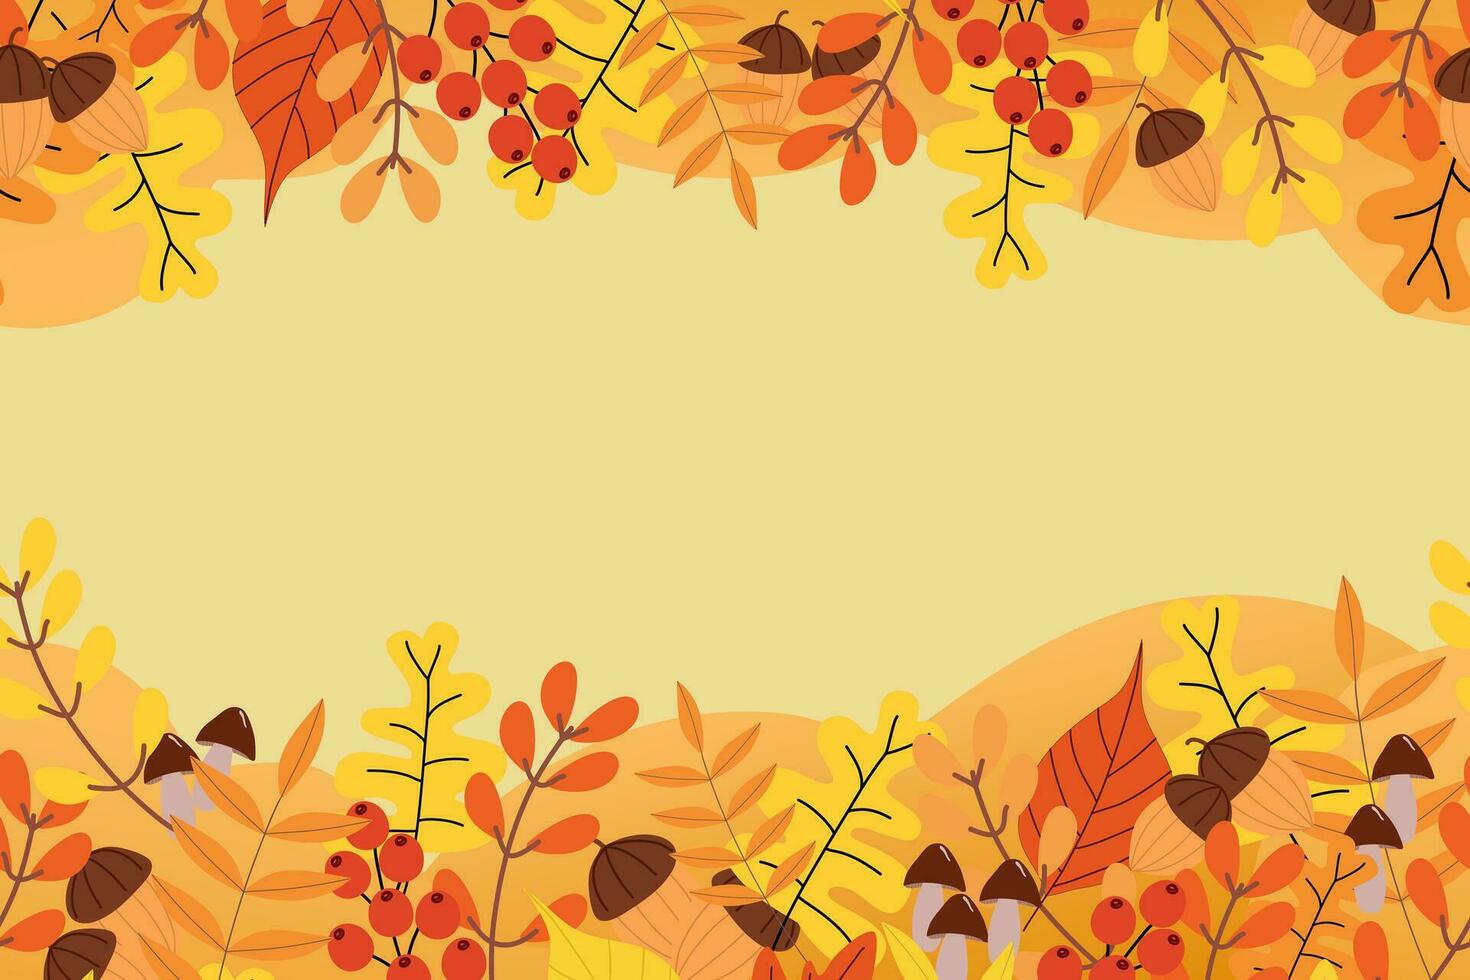 Autumn leaf set background vector illustration